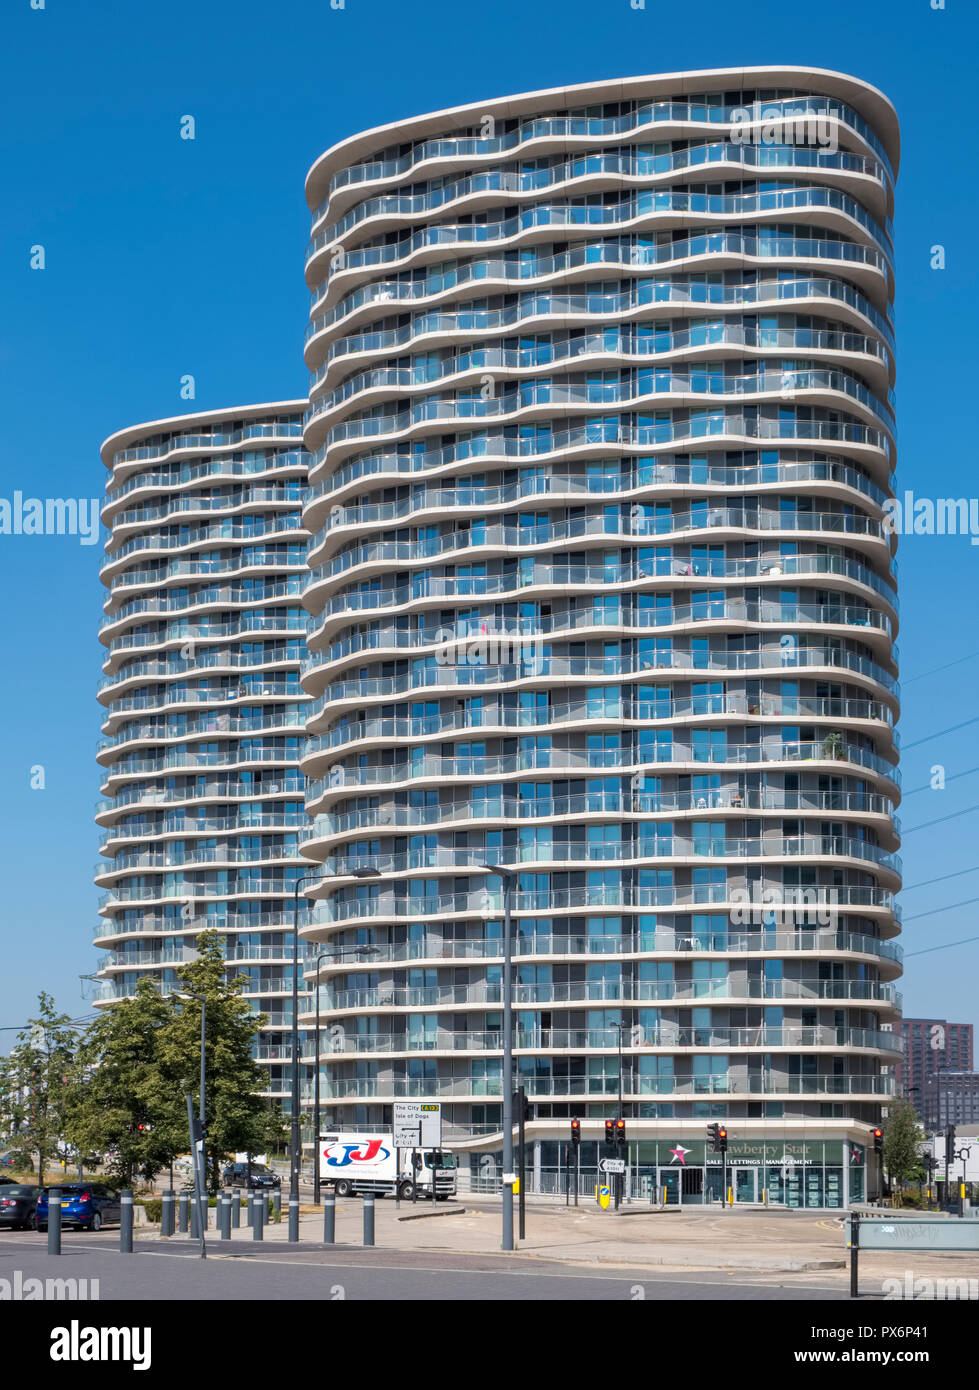 Alto edificio di condomini presso il Royal Victoria Dock, Londra, Inghilterra, Regno Unito, architettura moderna Foto Stock